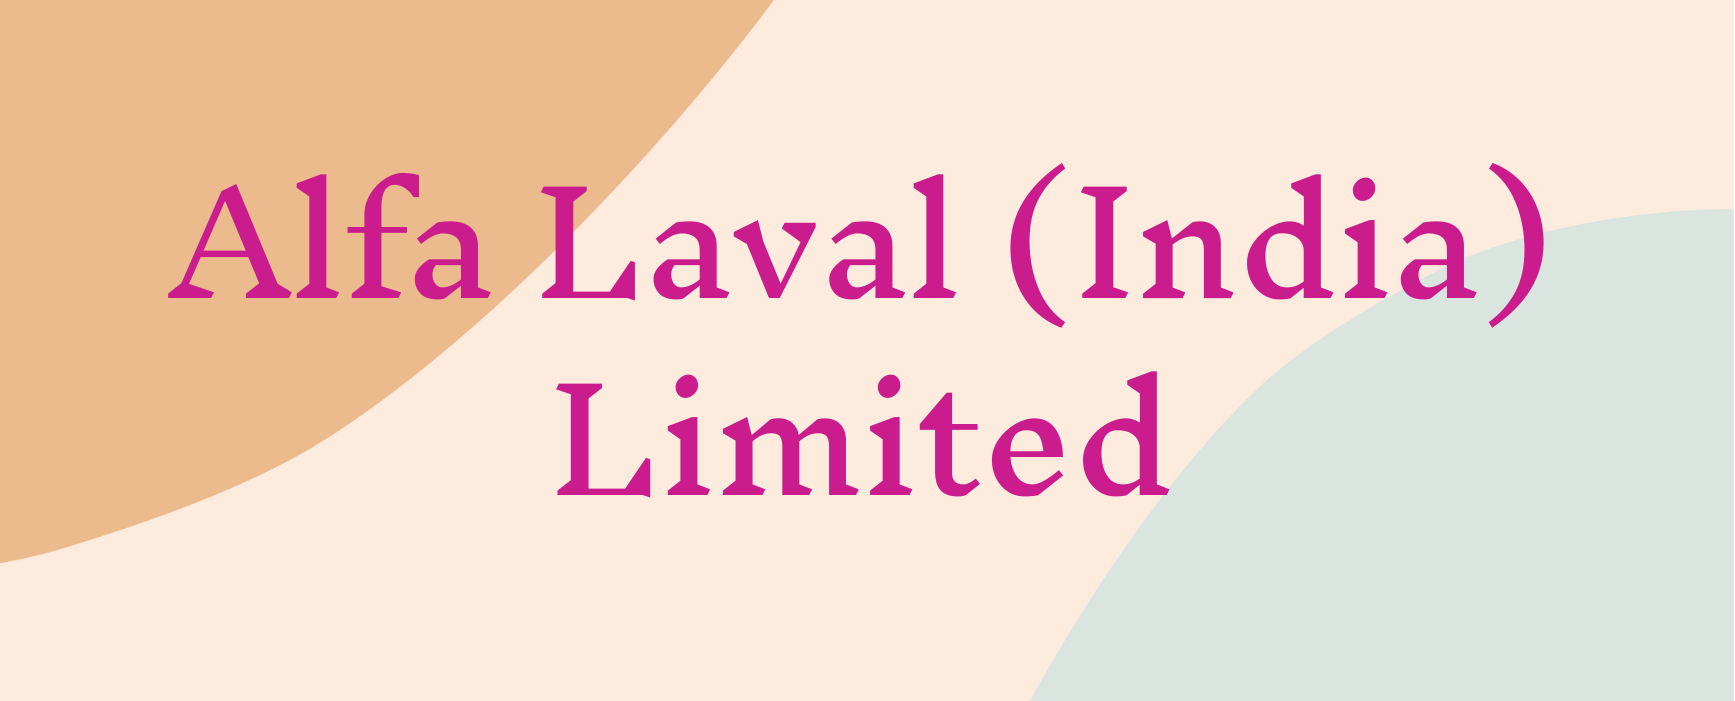 Alfa Laval (India) Limited.